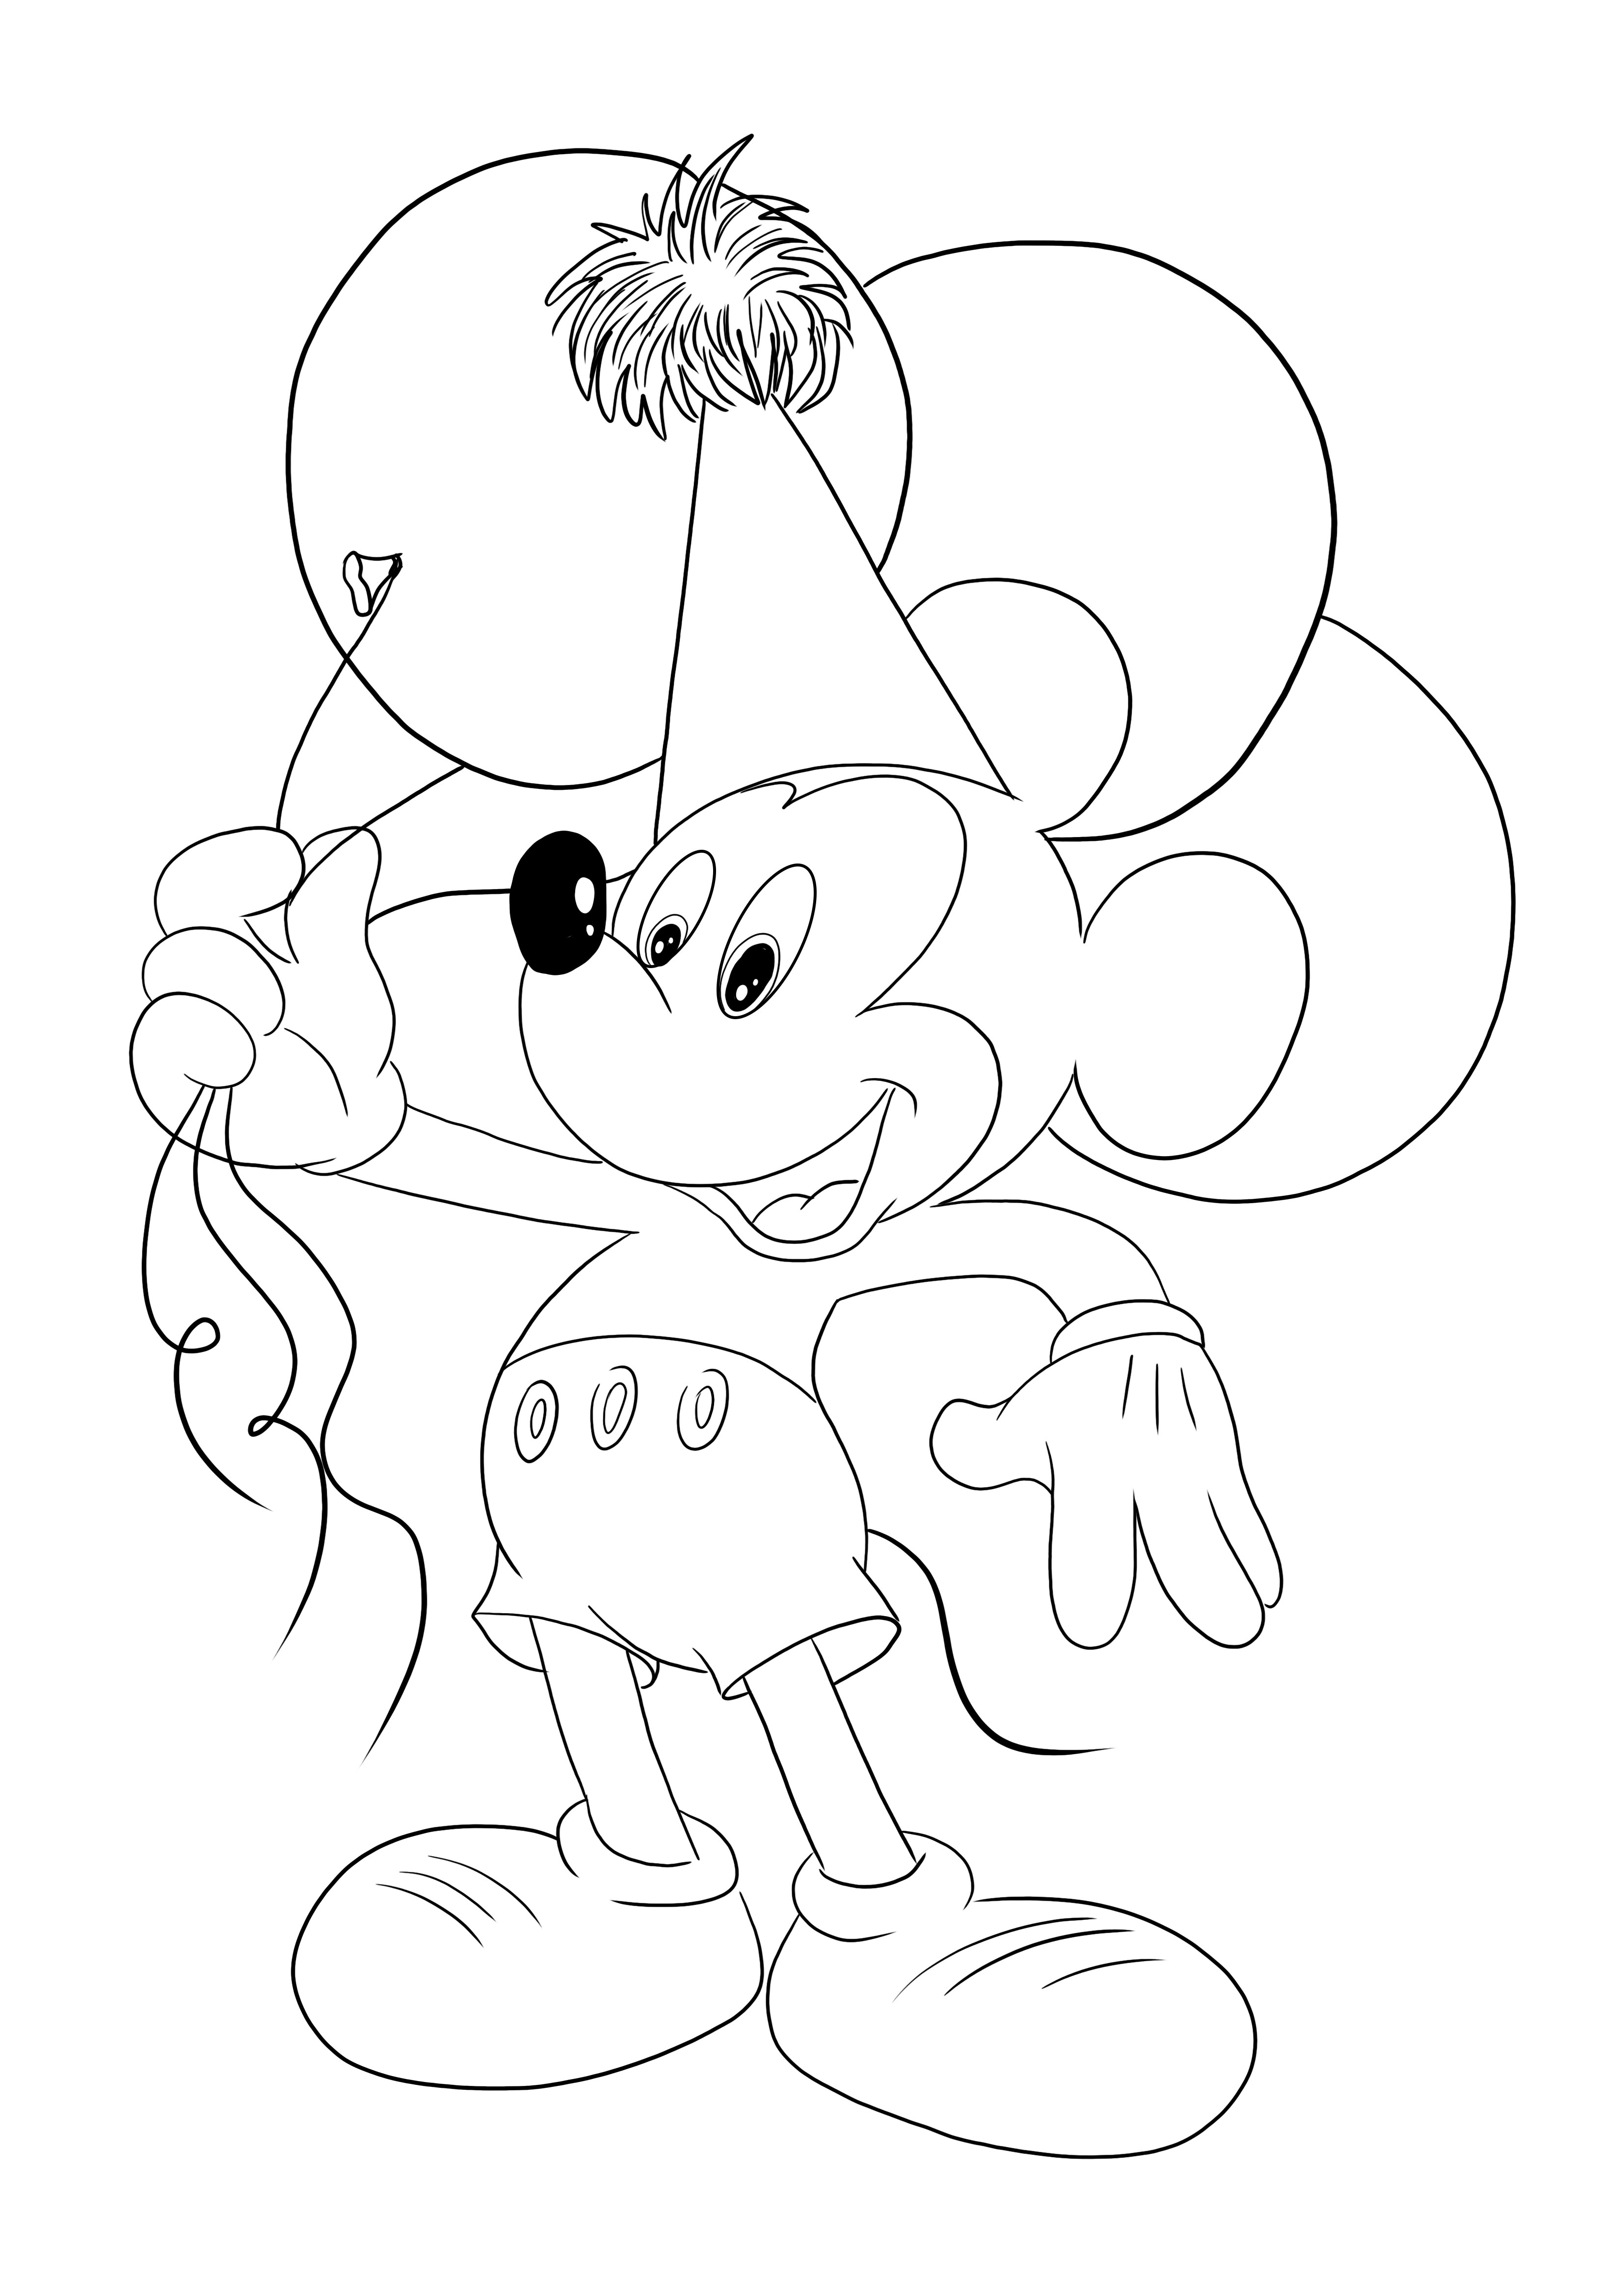 子供が簡単に色付けできる無料の風船付きミッキーマウス